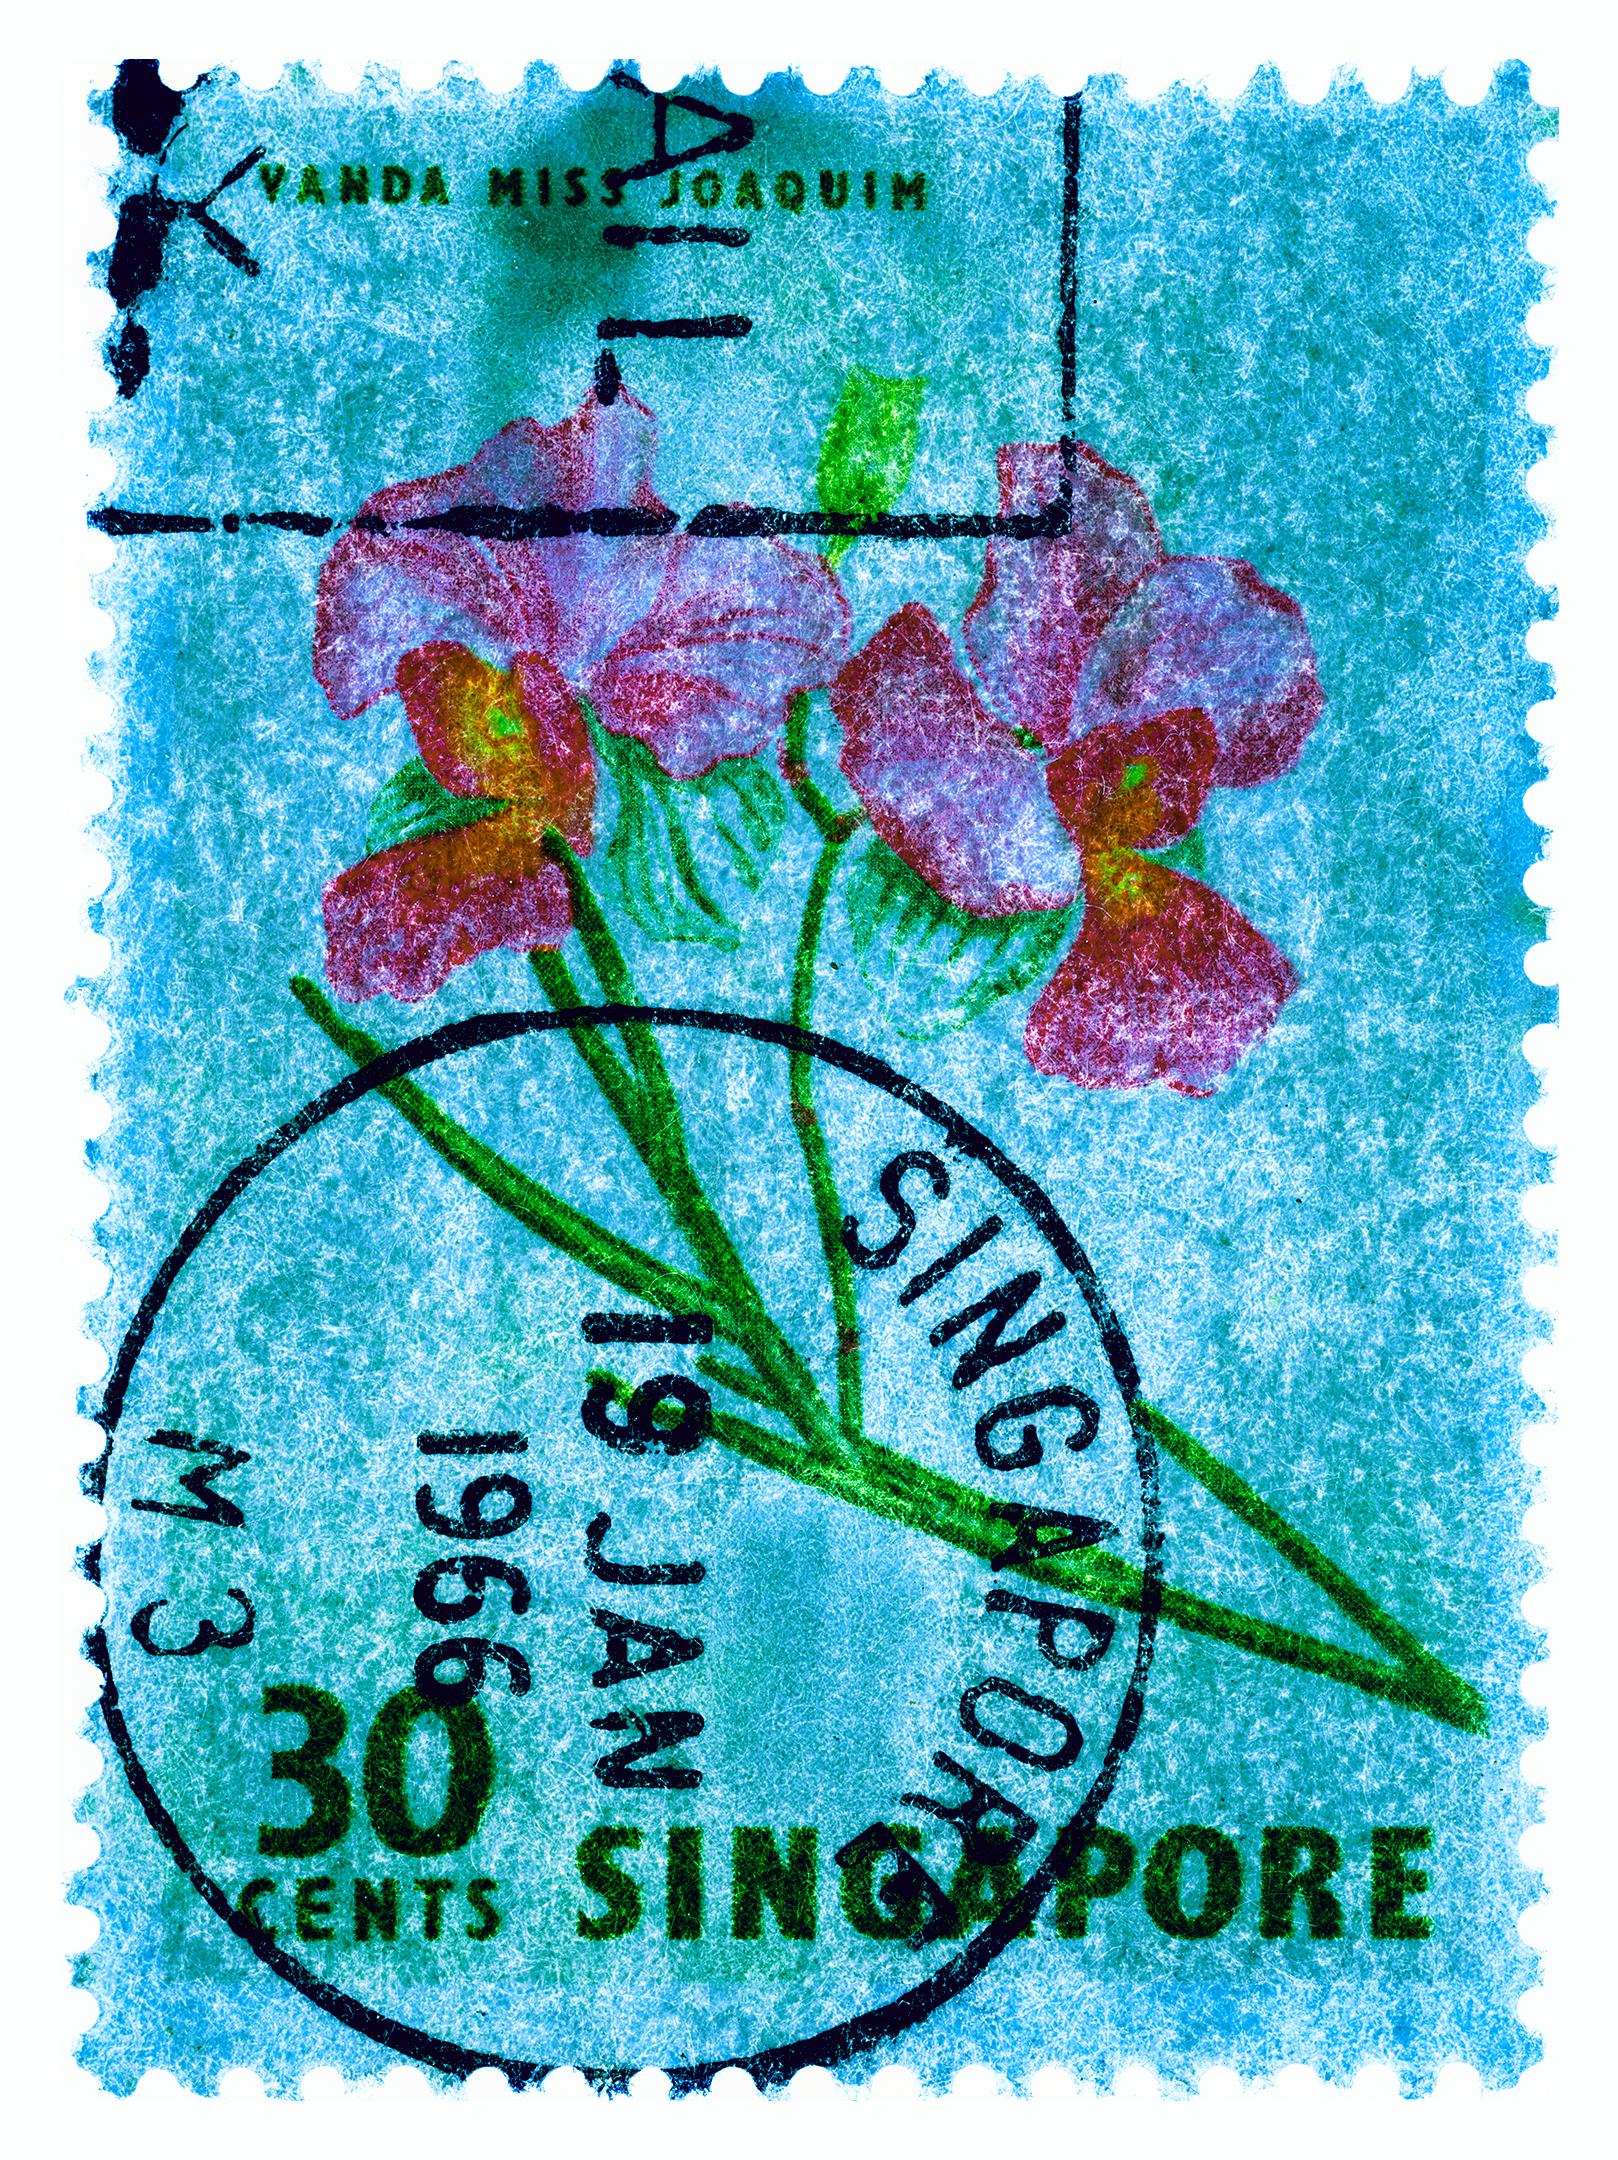 Singapurer Stempelkollektion, 30c Singapur Orchideenblau – Farbfoto mit Blumenmuster